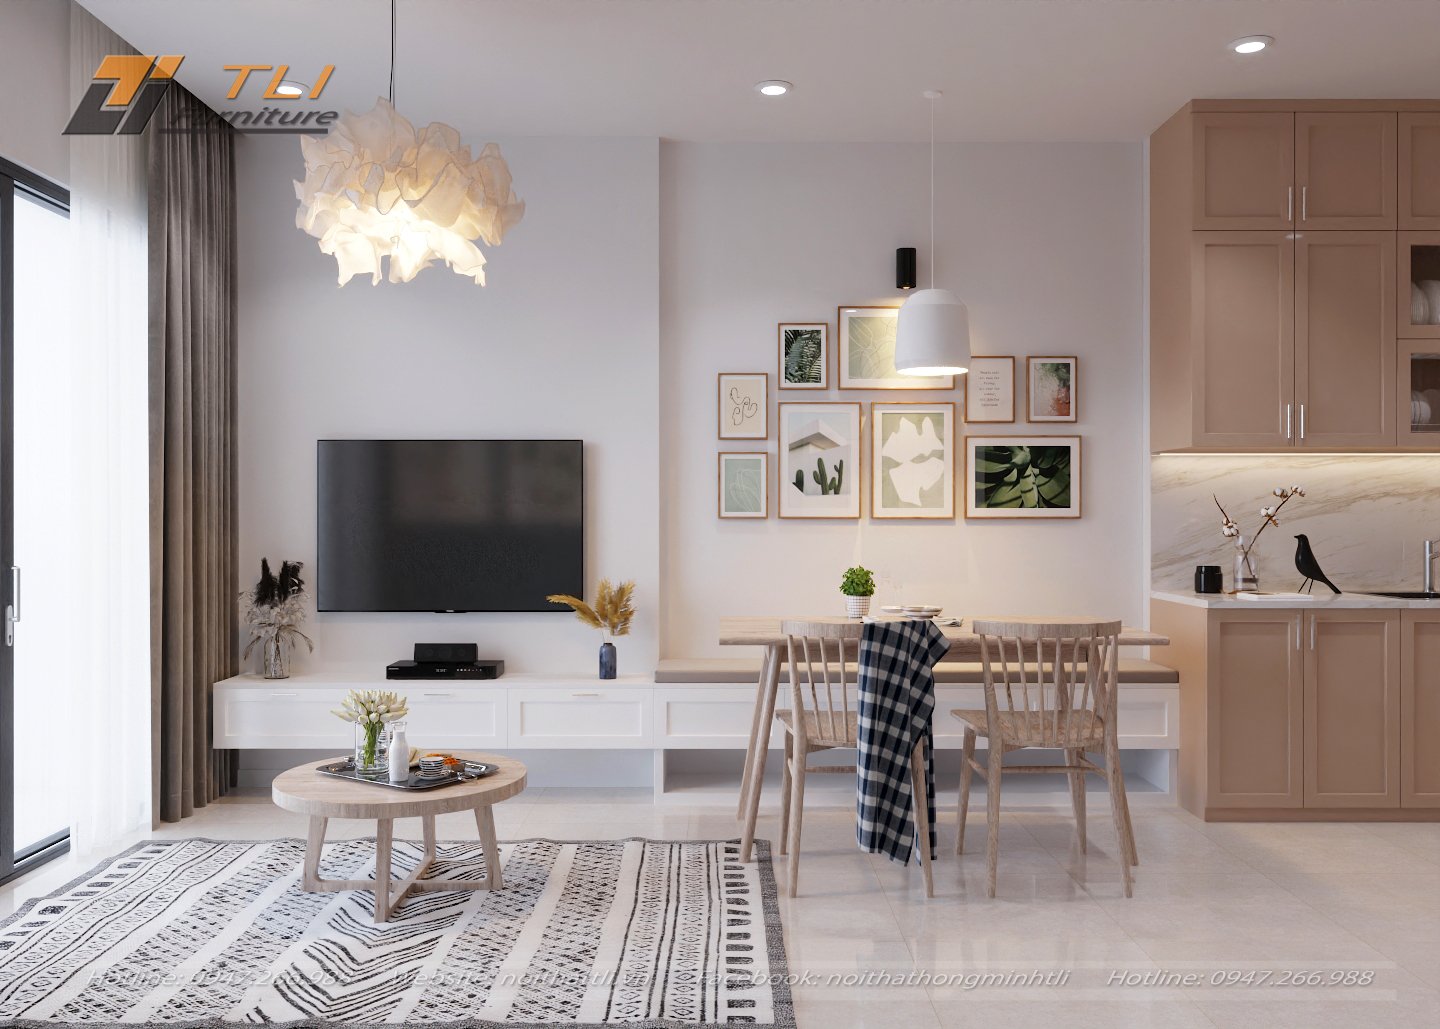 Thiết kế phòng khách chung cư nhỏ là một thách thức, nhưng không phải là khó khăn. Các kiến trúc sư và nhà thiết kế nội thất luôn sáng tạo để tạo ra không gian đa năng và tiện nghi. Những hình ảnh về thiết kế phòng khách chung cư nhỏ sẽ giúp bạn có nhiều ý tưởng cho không gian của mình.